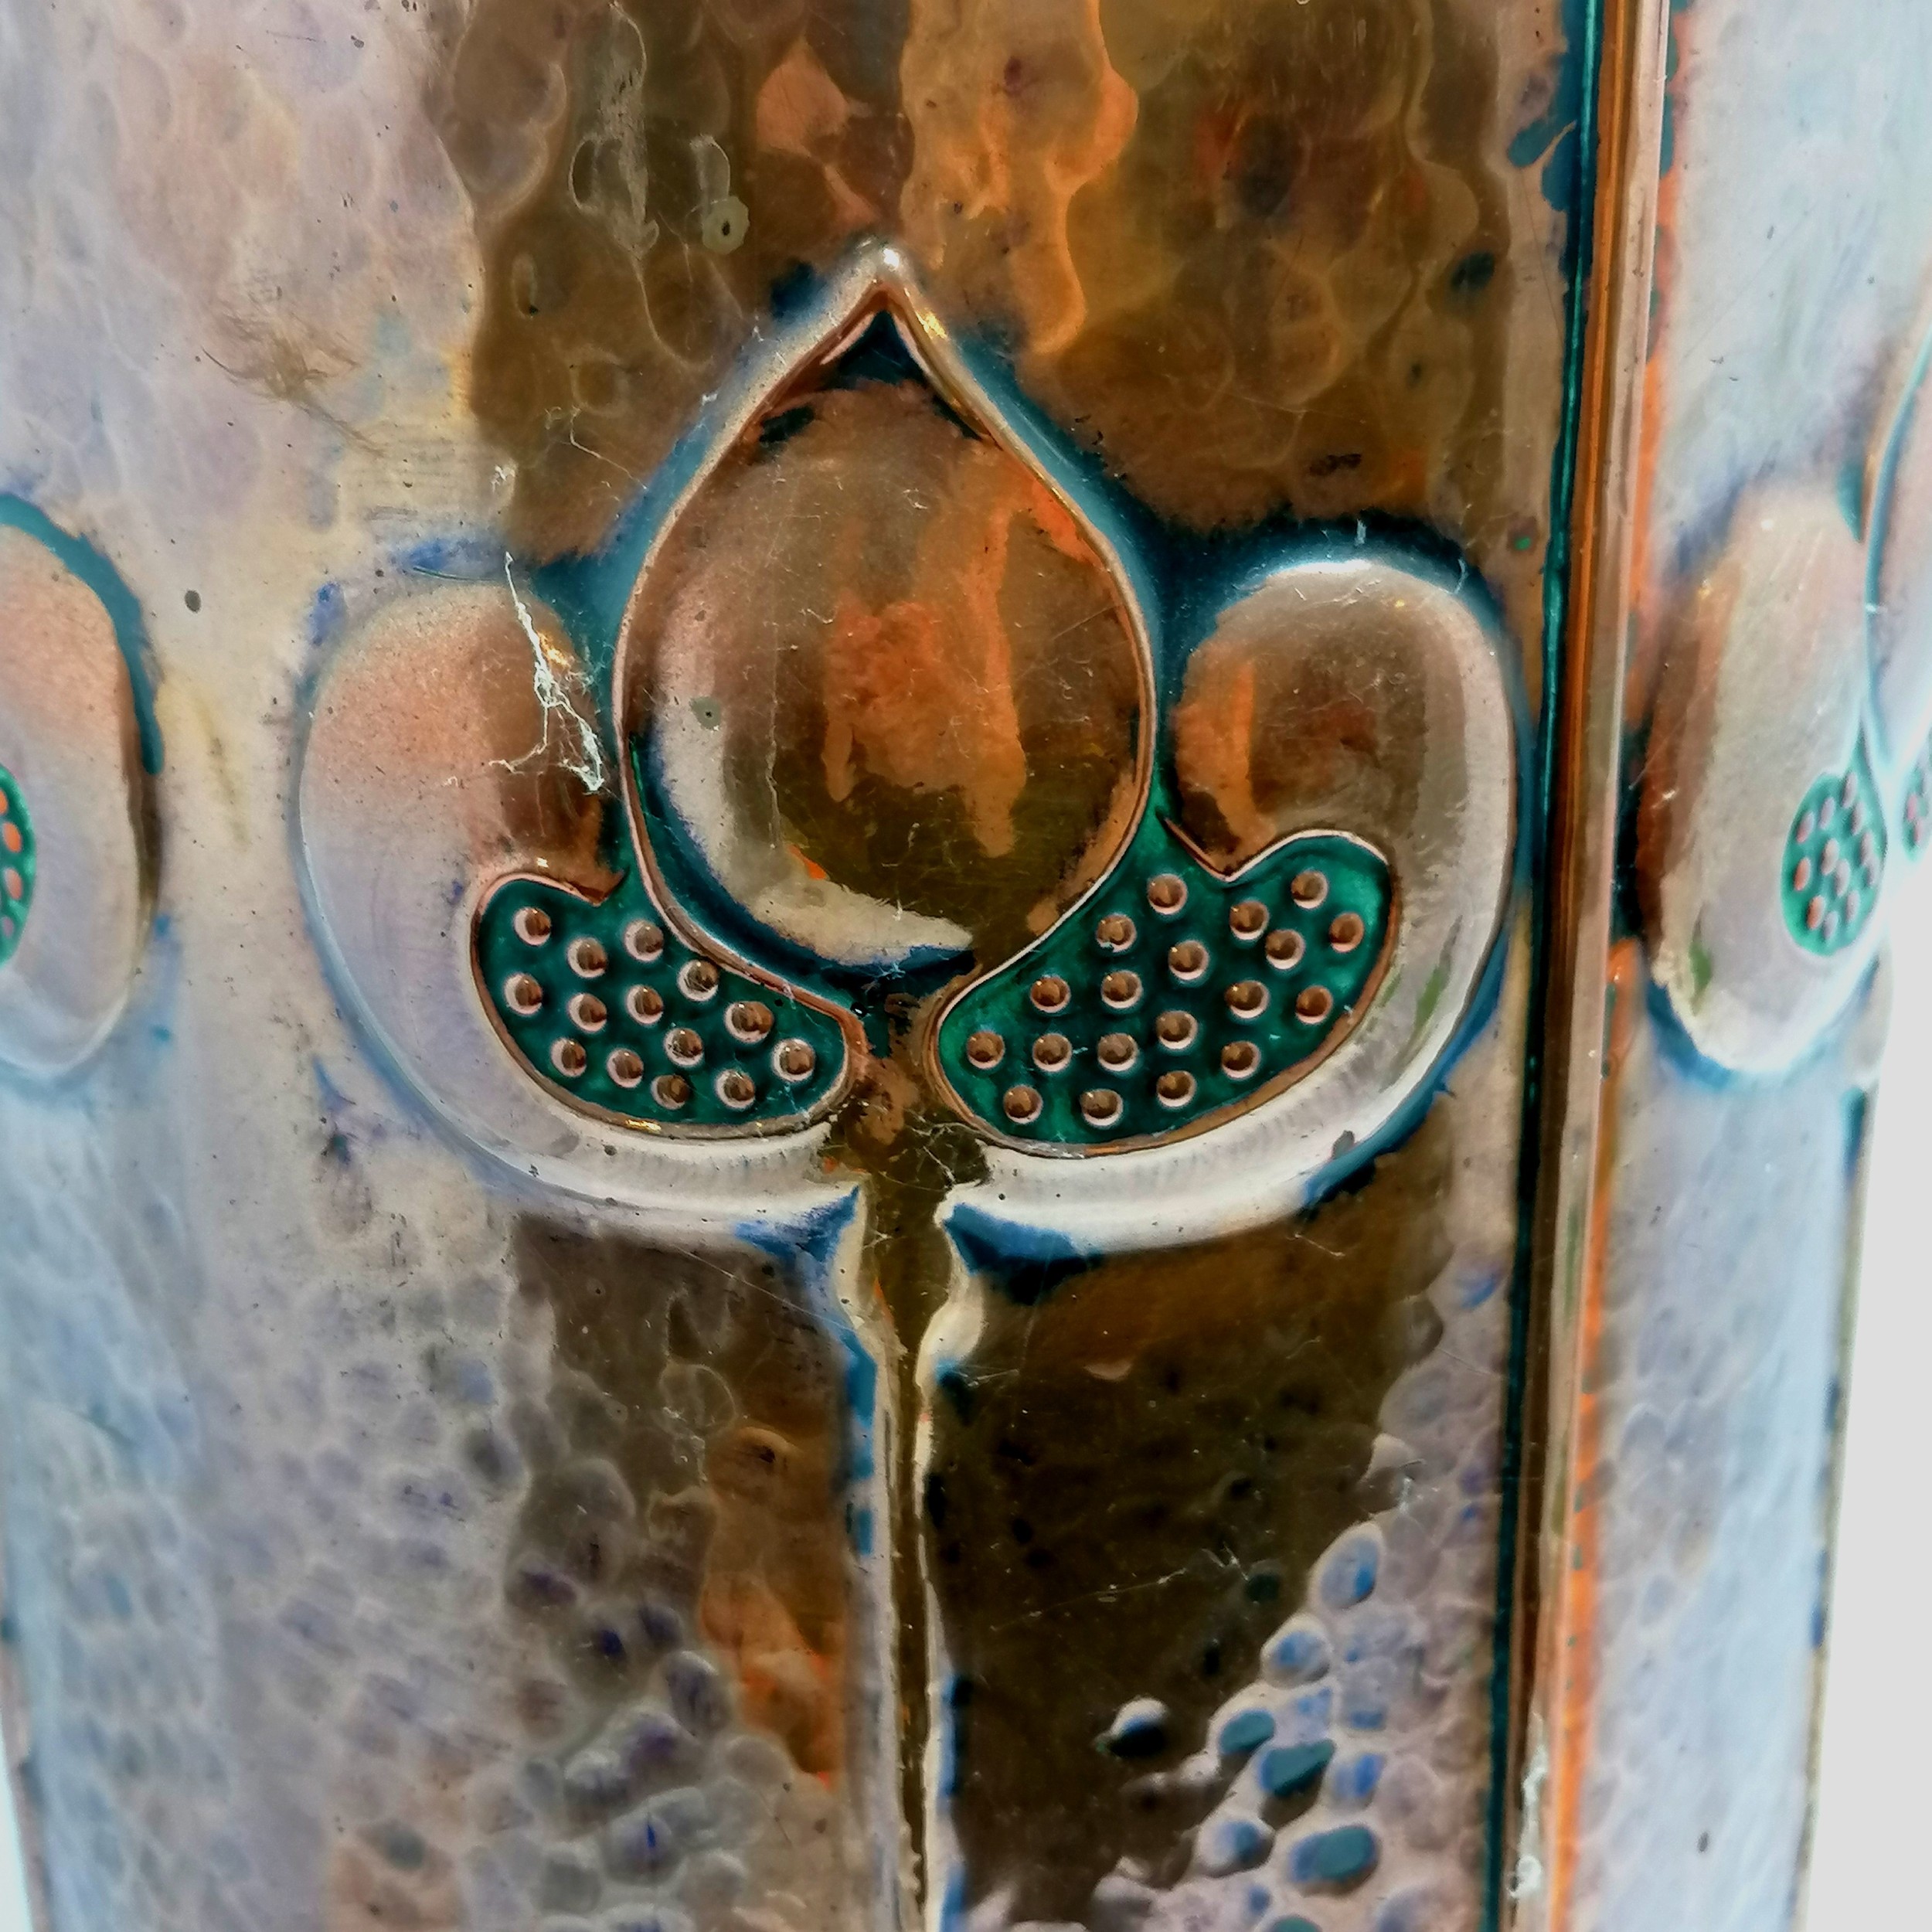 Antique Arts & Crafts / Art Nouveau copper stick stand - 61cm & 23cm diameter top ~ no obvious - Image 3 of 5